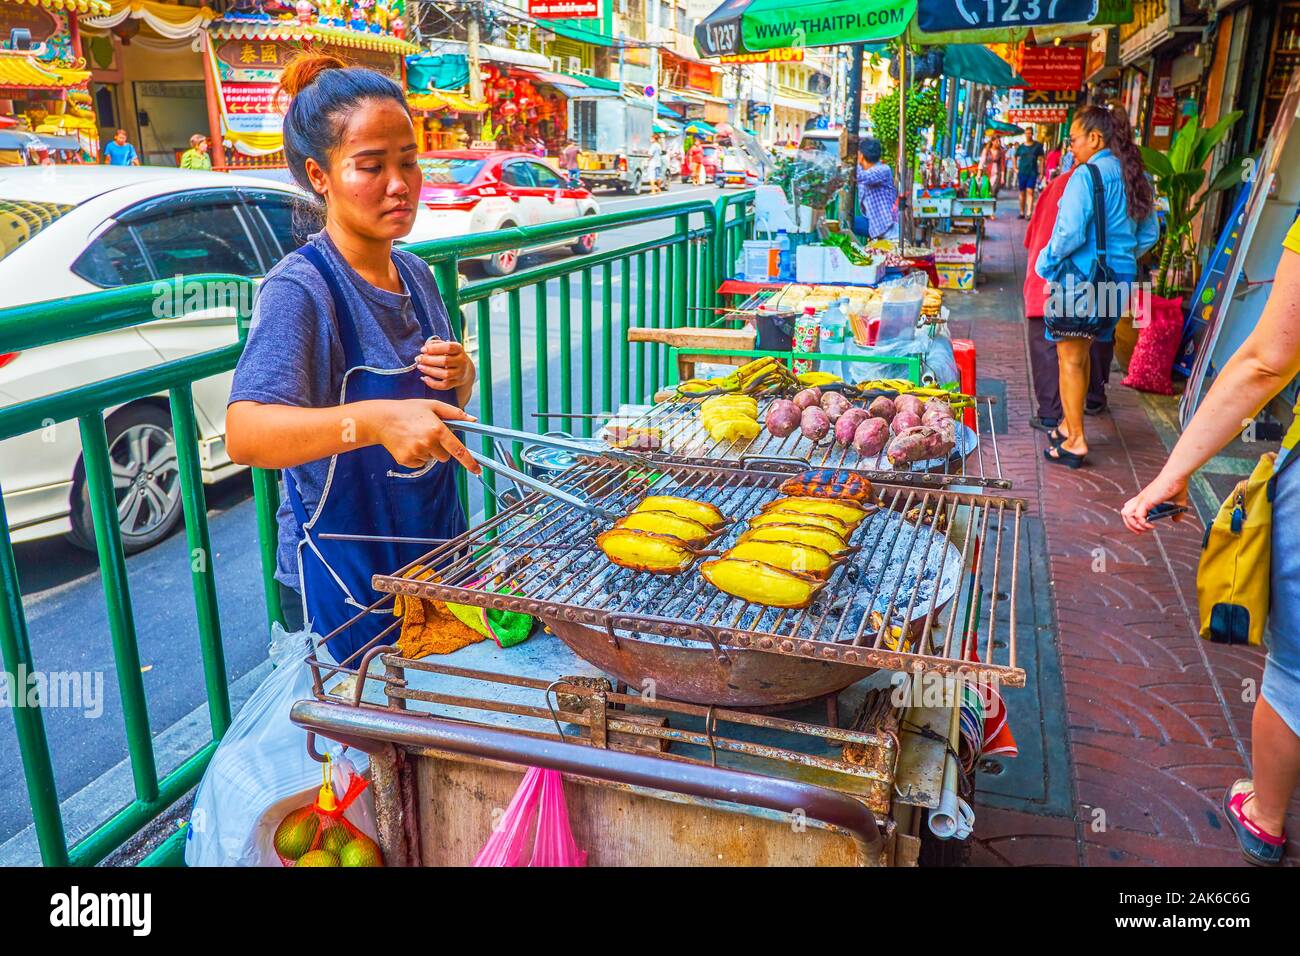 BANGKOK, THAILAND - 15 April, 2019: Der junge Koch bereitet frittierte Bananen und Süßkartoffeln auf der Straße in Chinatown, am 15. April in Bangkok. Stockfoto